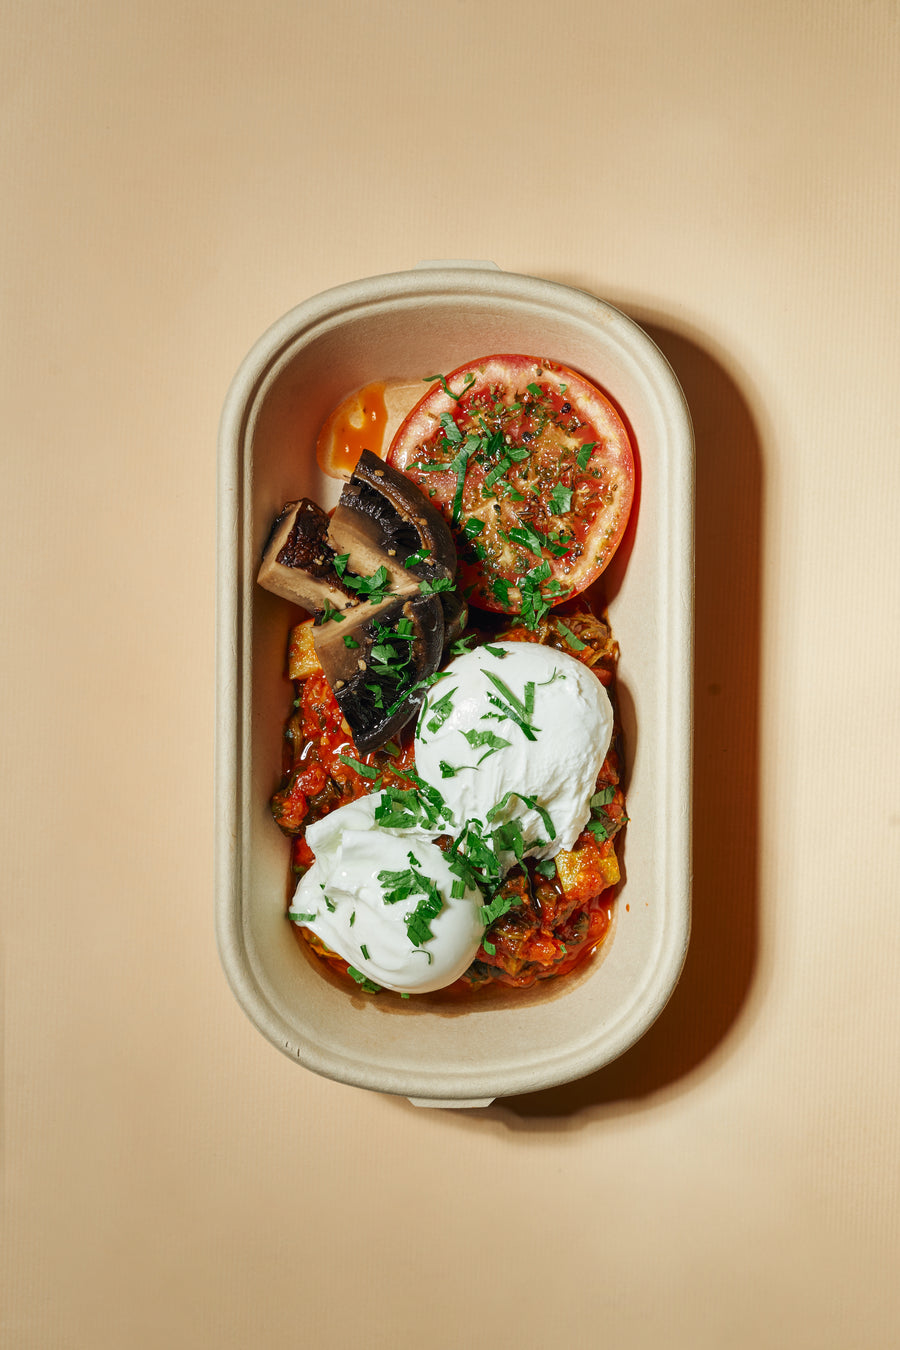 摩洛哥風格的荷包蛋低脂番茄醬配烤波托貝羅蘑菇、菠菜和 翠肉瓜